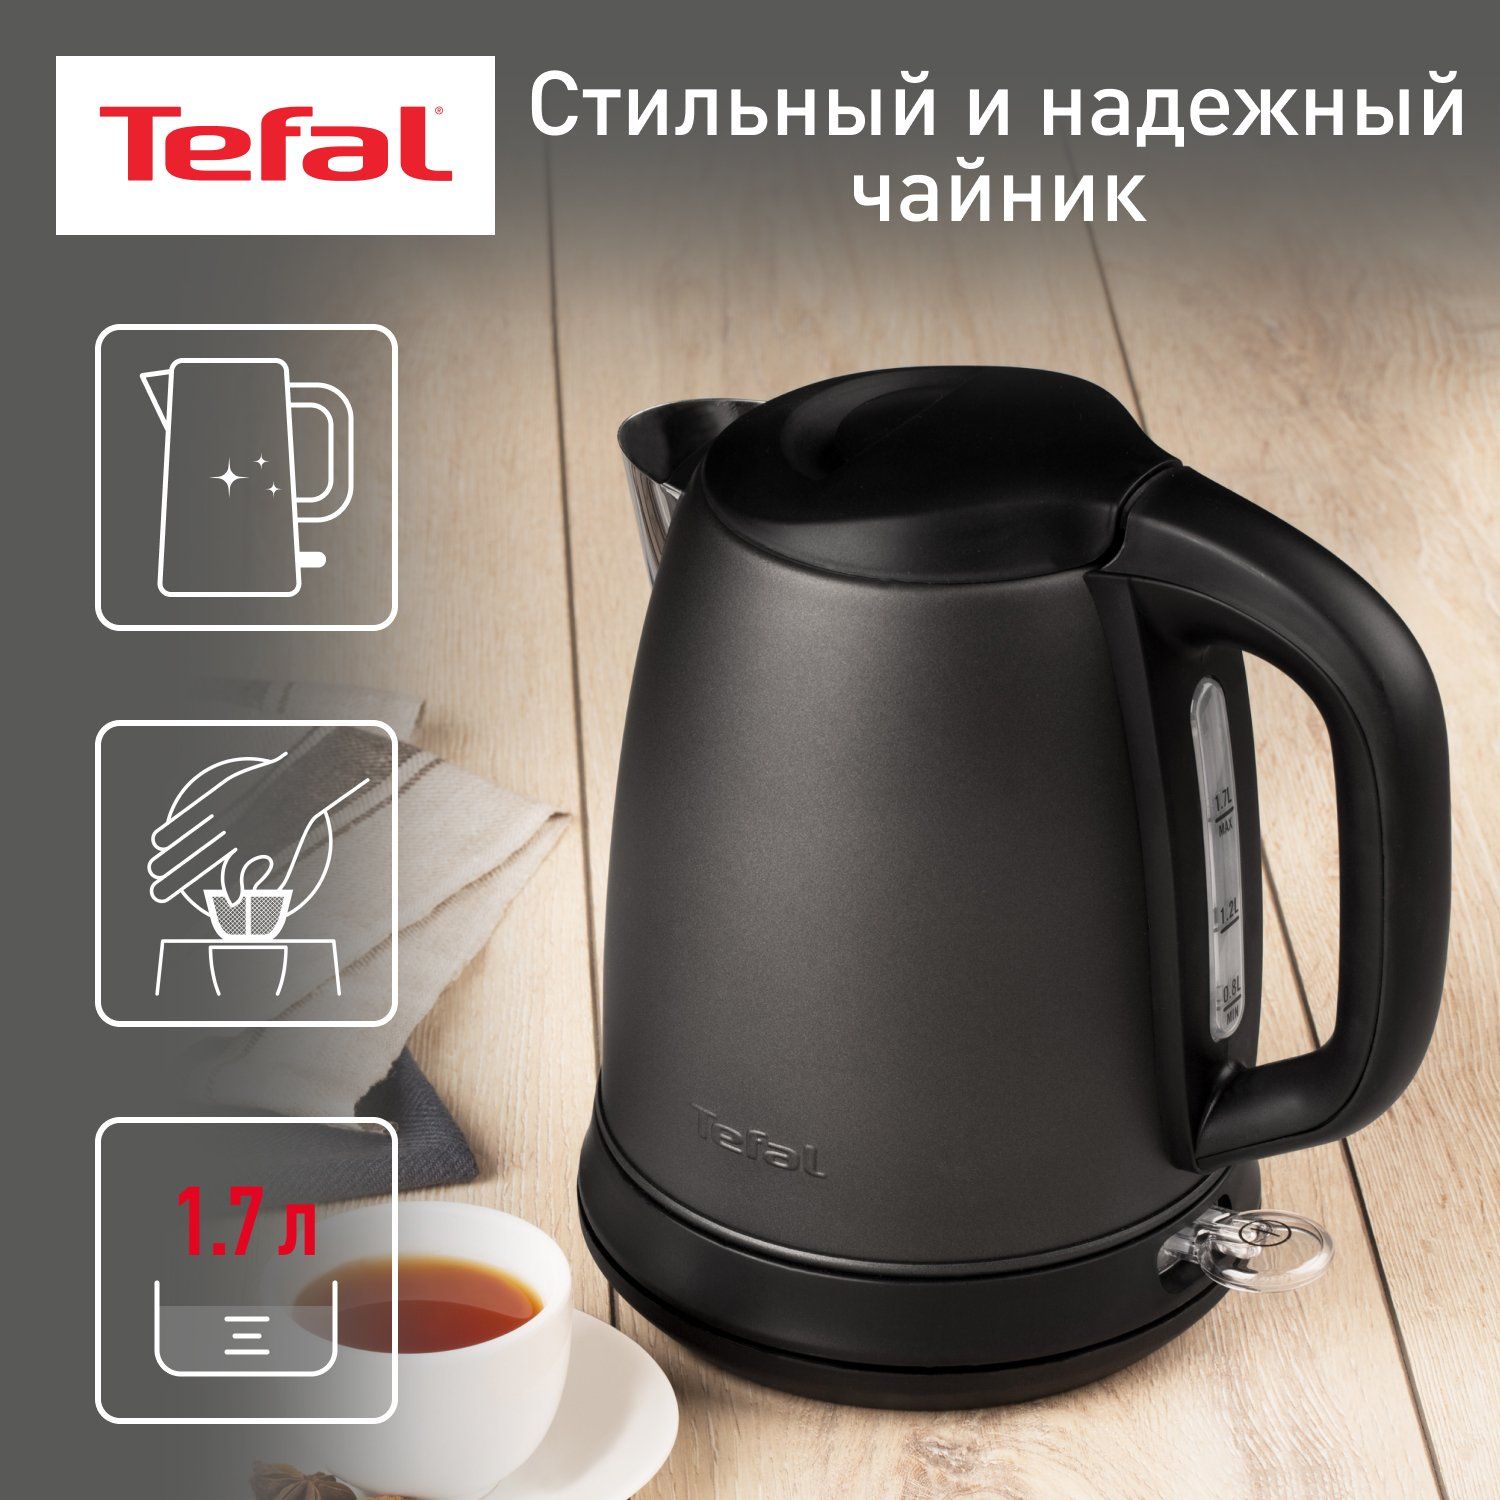 Чайник электрический Tefal Confidence KI270930, 1.7 л, графит/черный фильтр tefal zr009004